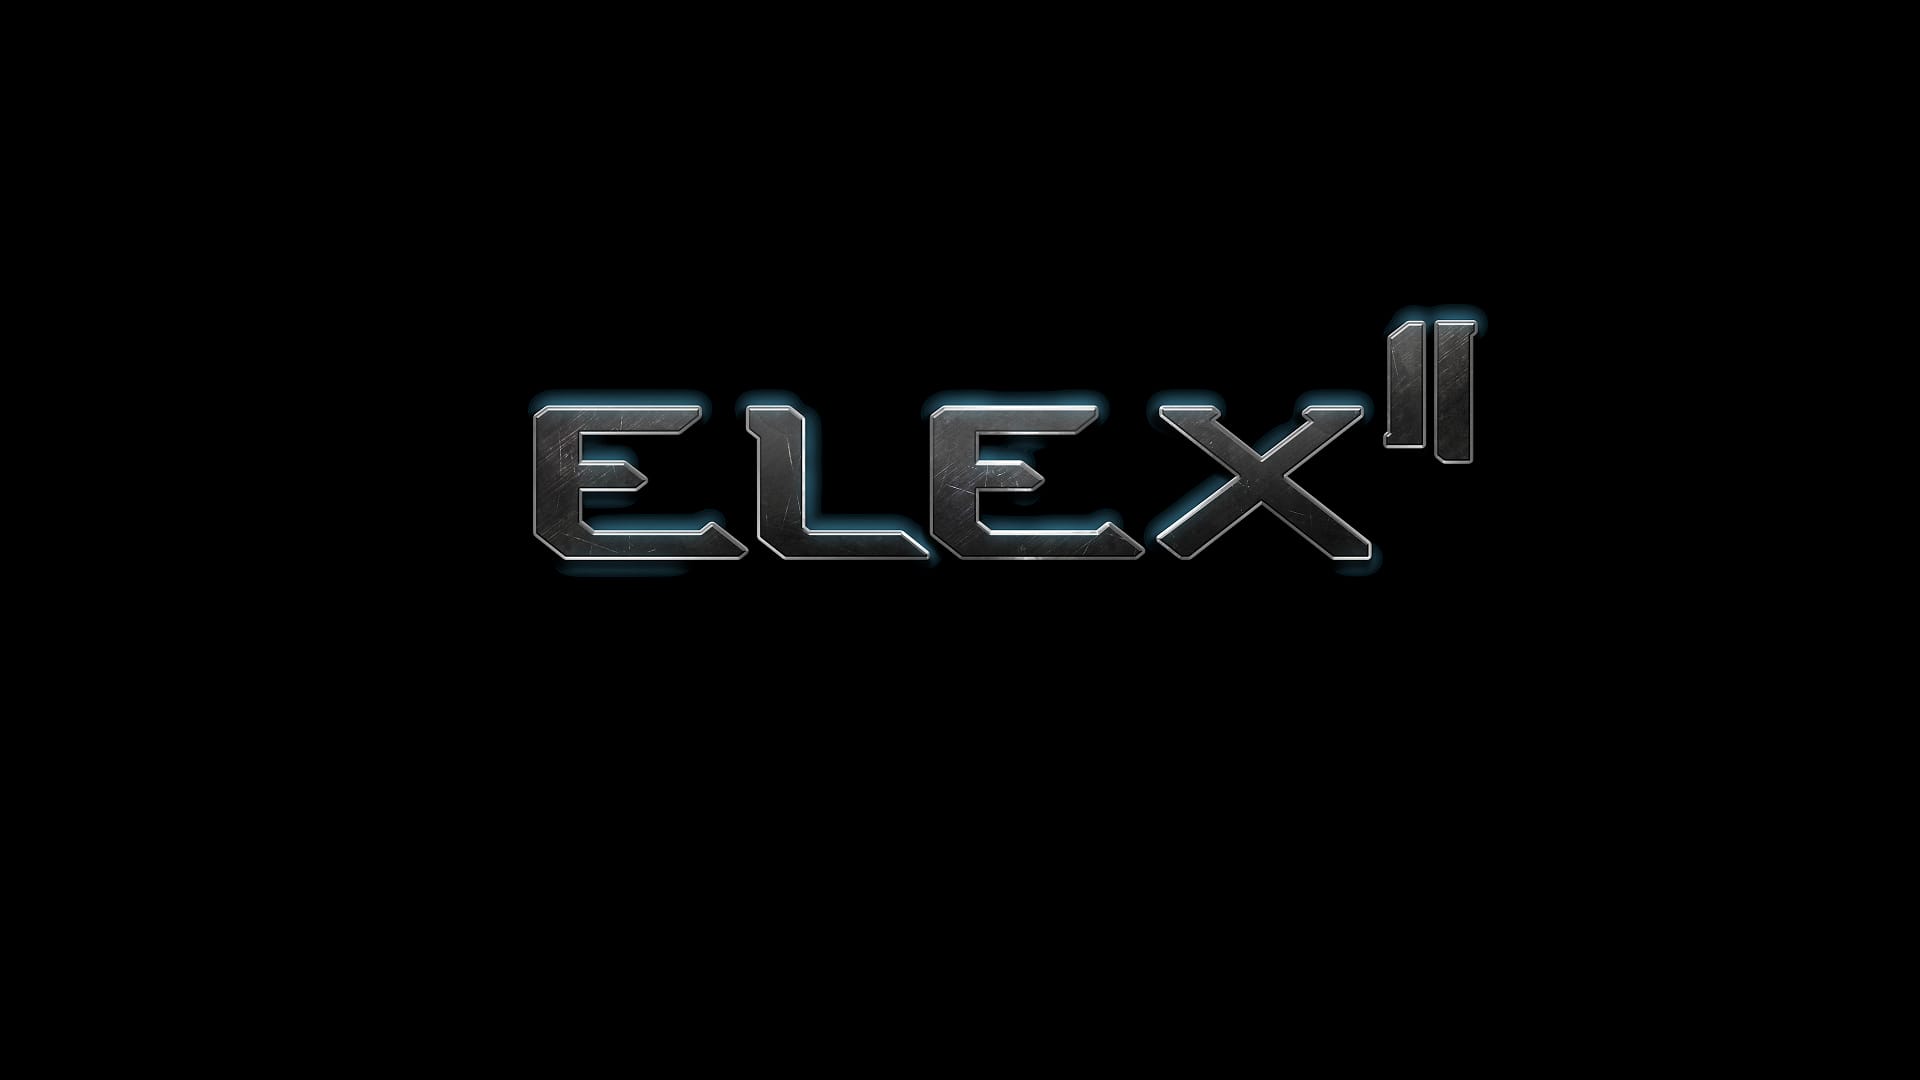 ELEX 2 лого. Телеканал 2x2 логотип. Ps4 эмблема. Обои на ПК нави. Level zero extraction